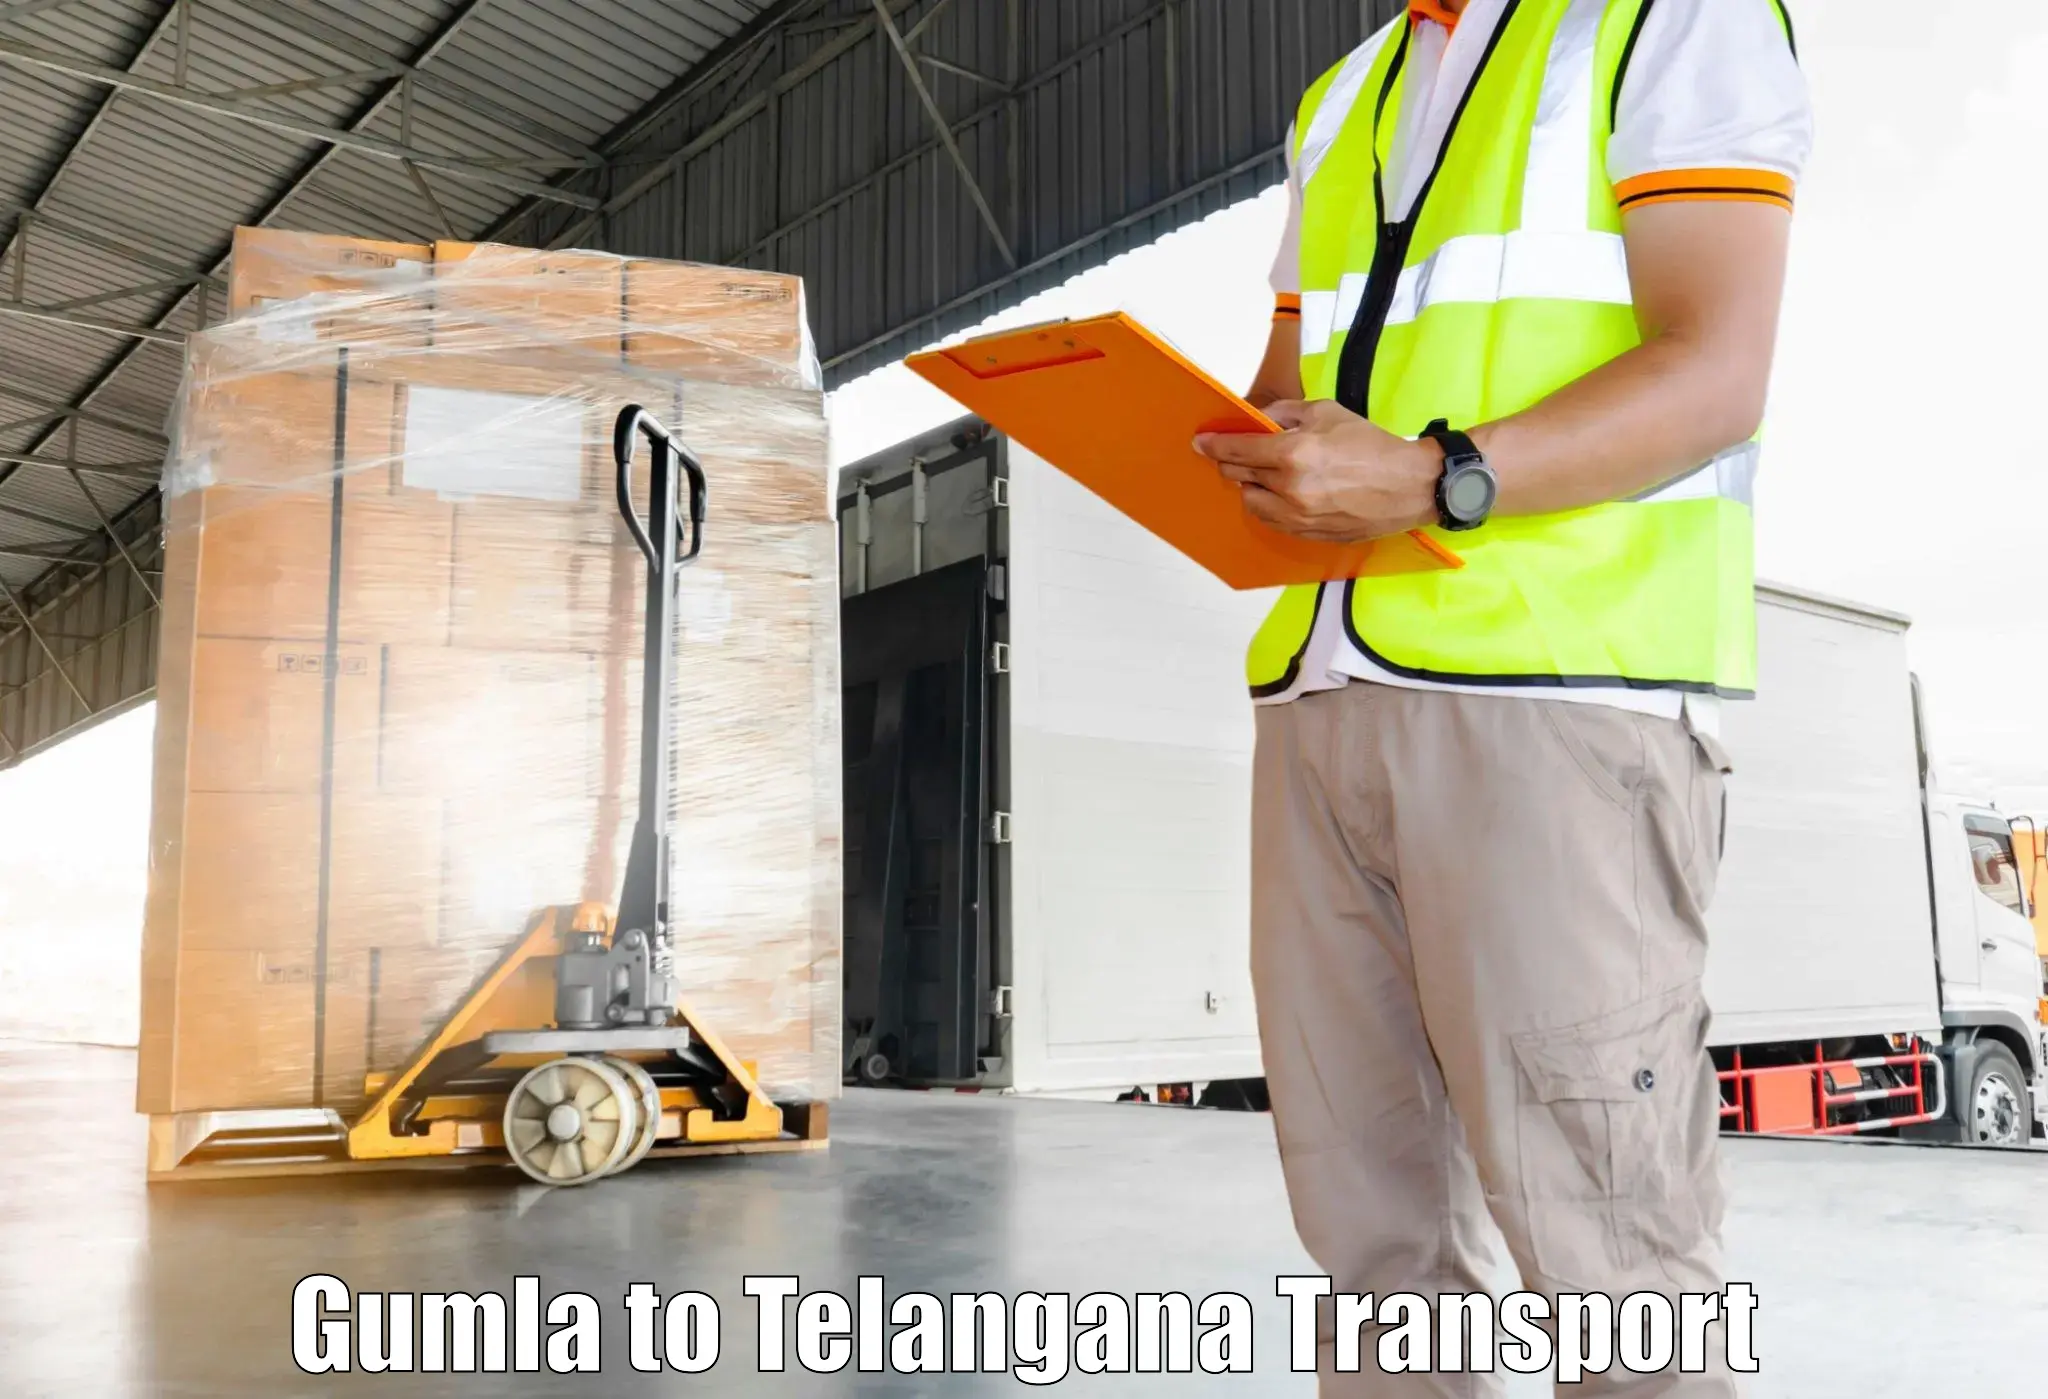 Interstate transport services Gumla to Rayaparthi